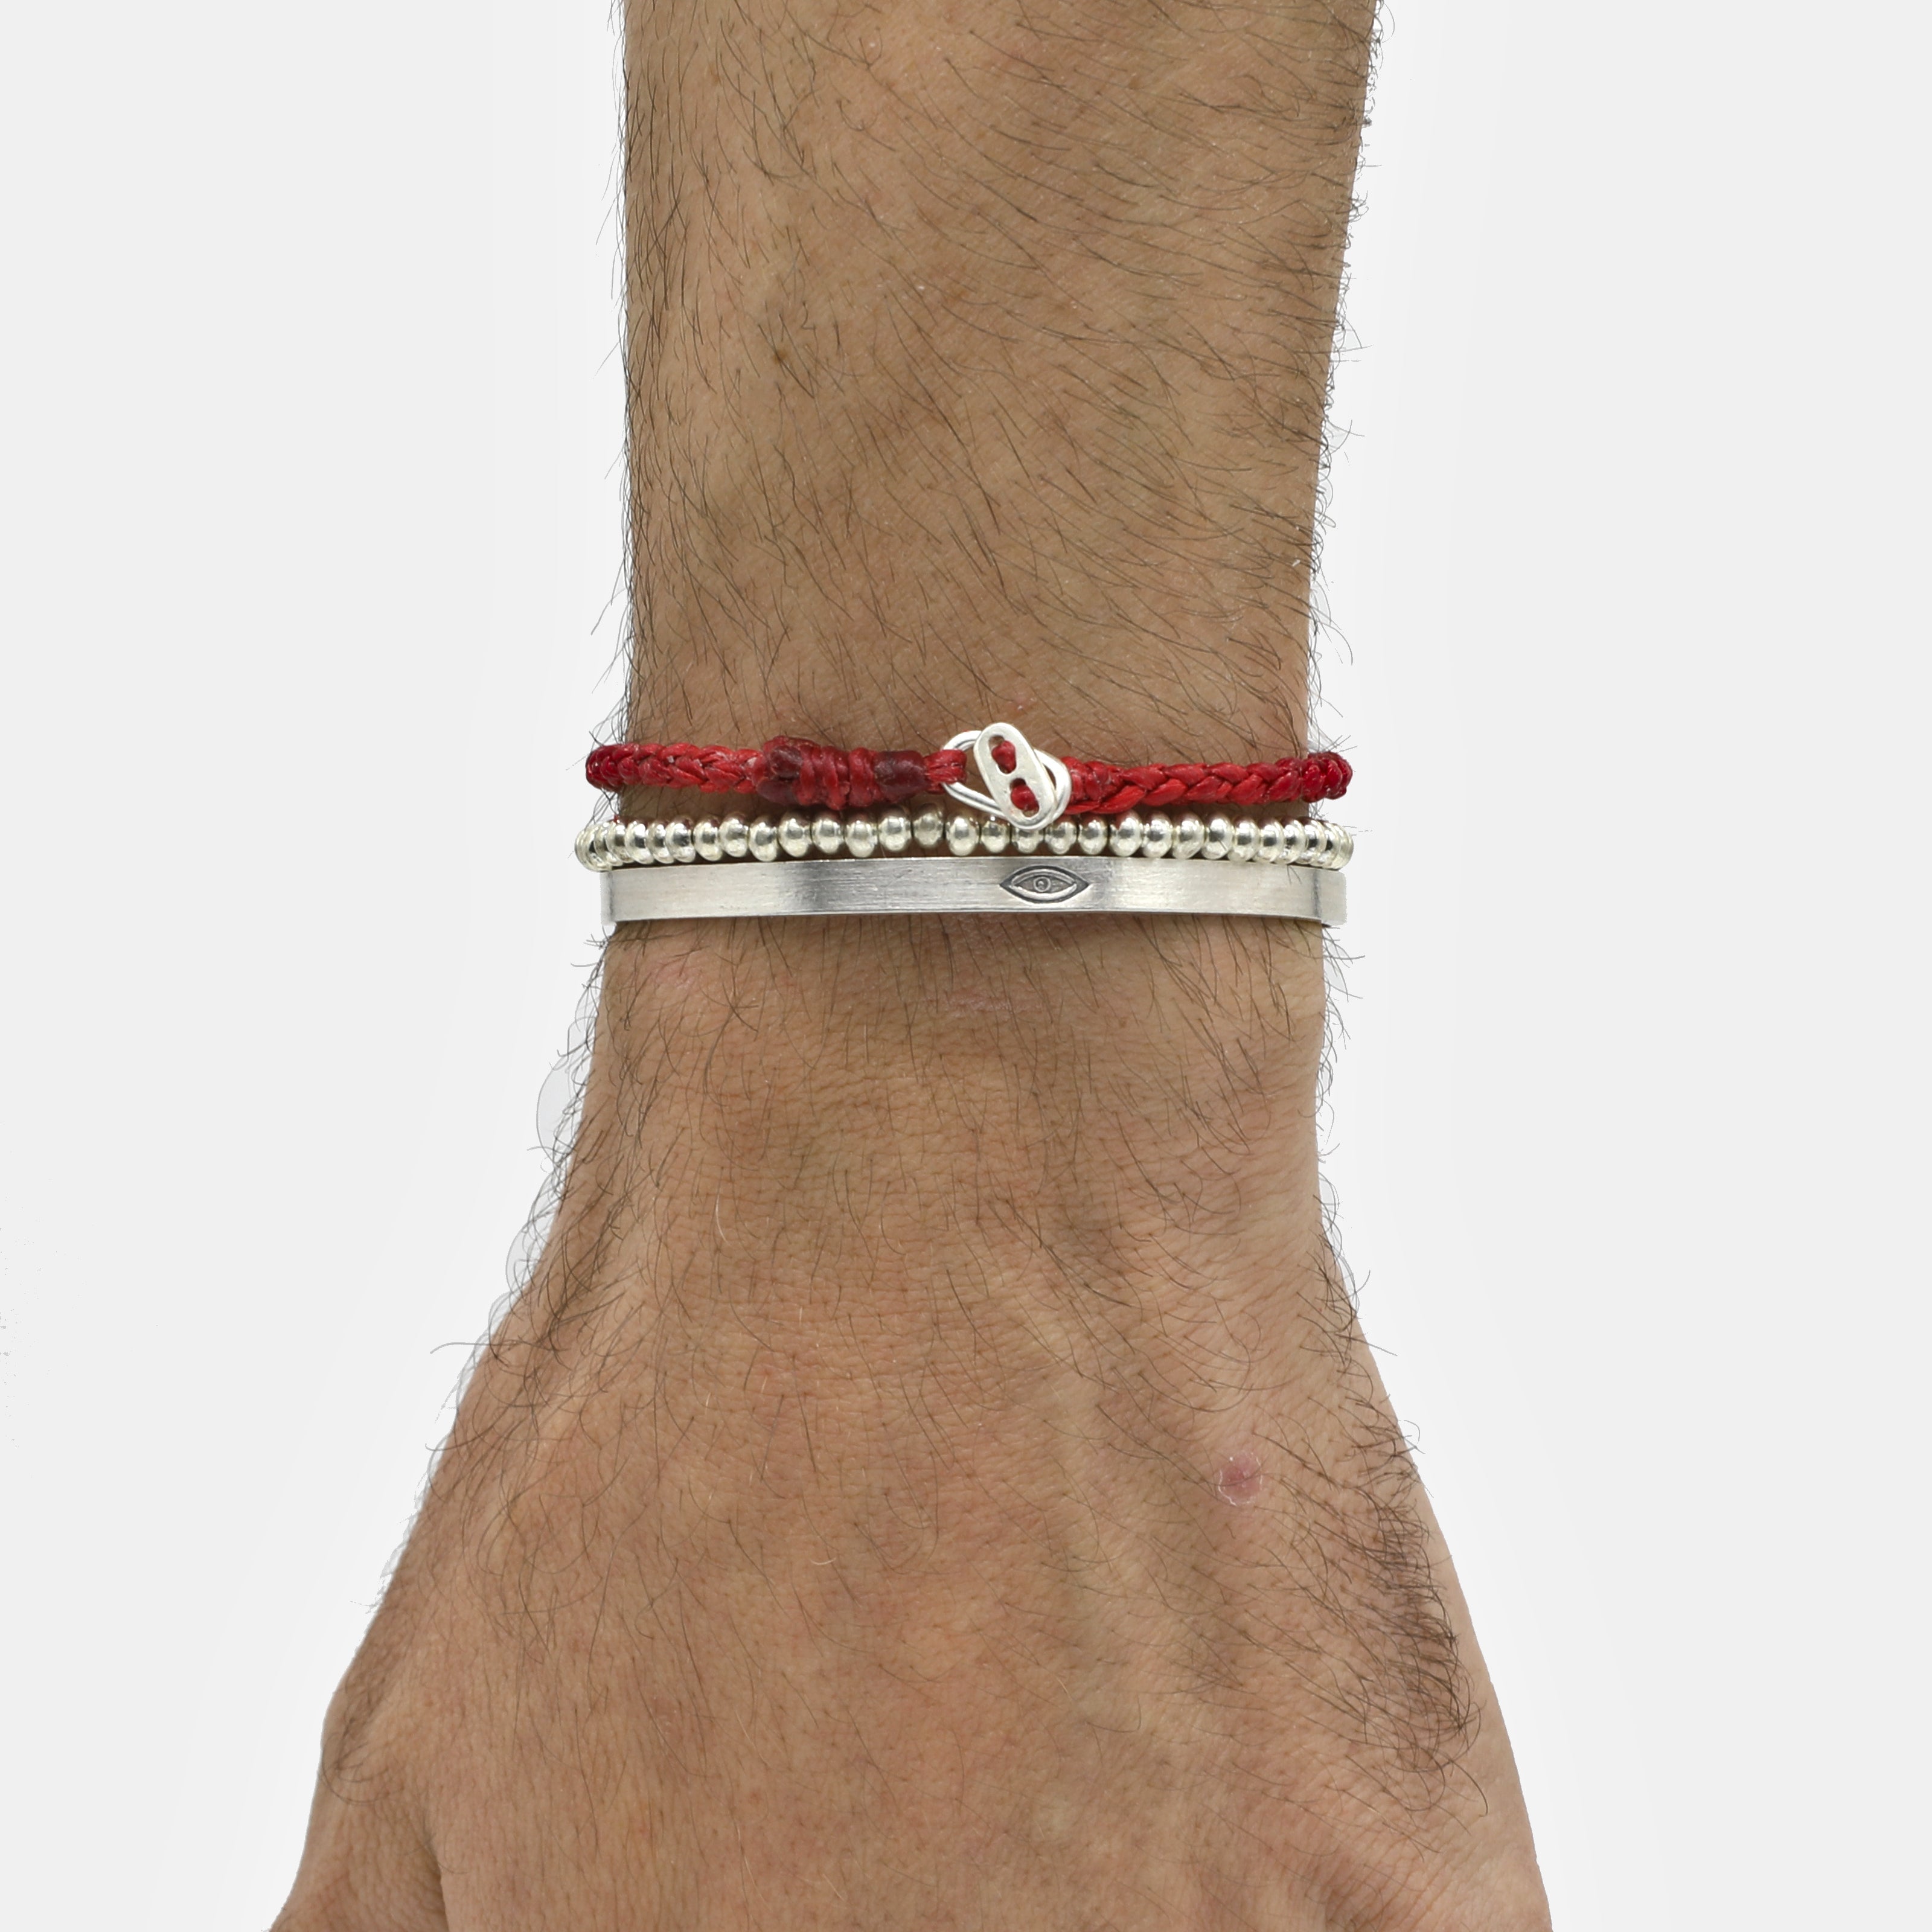 4mm Braided Bracelet With Sterling Silver Clasp (Red)-Bracelet-Kompsós